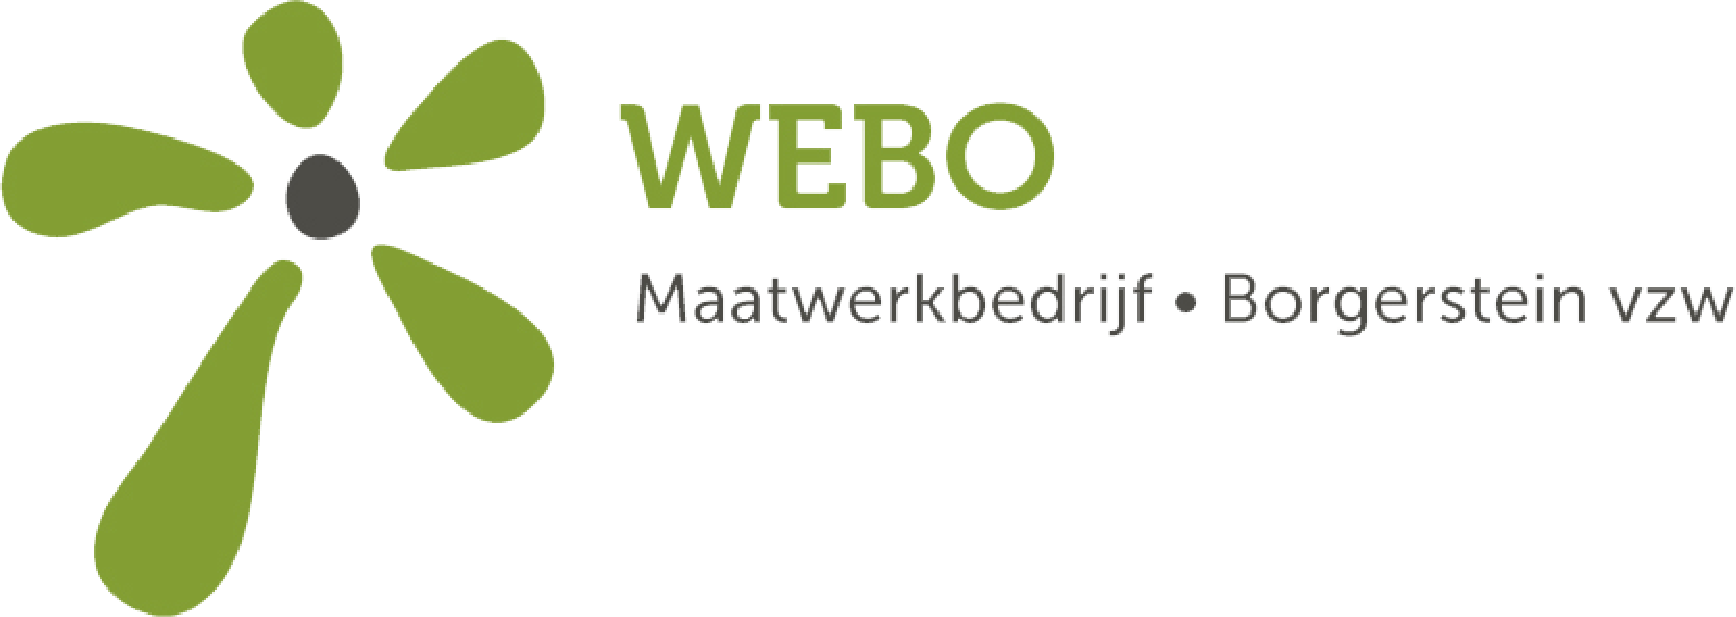 Logo Webo Borgerstein vzw